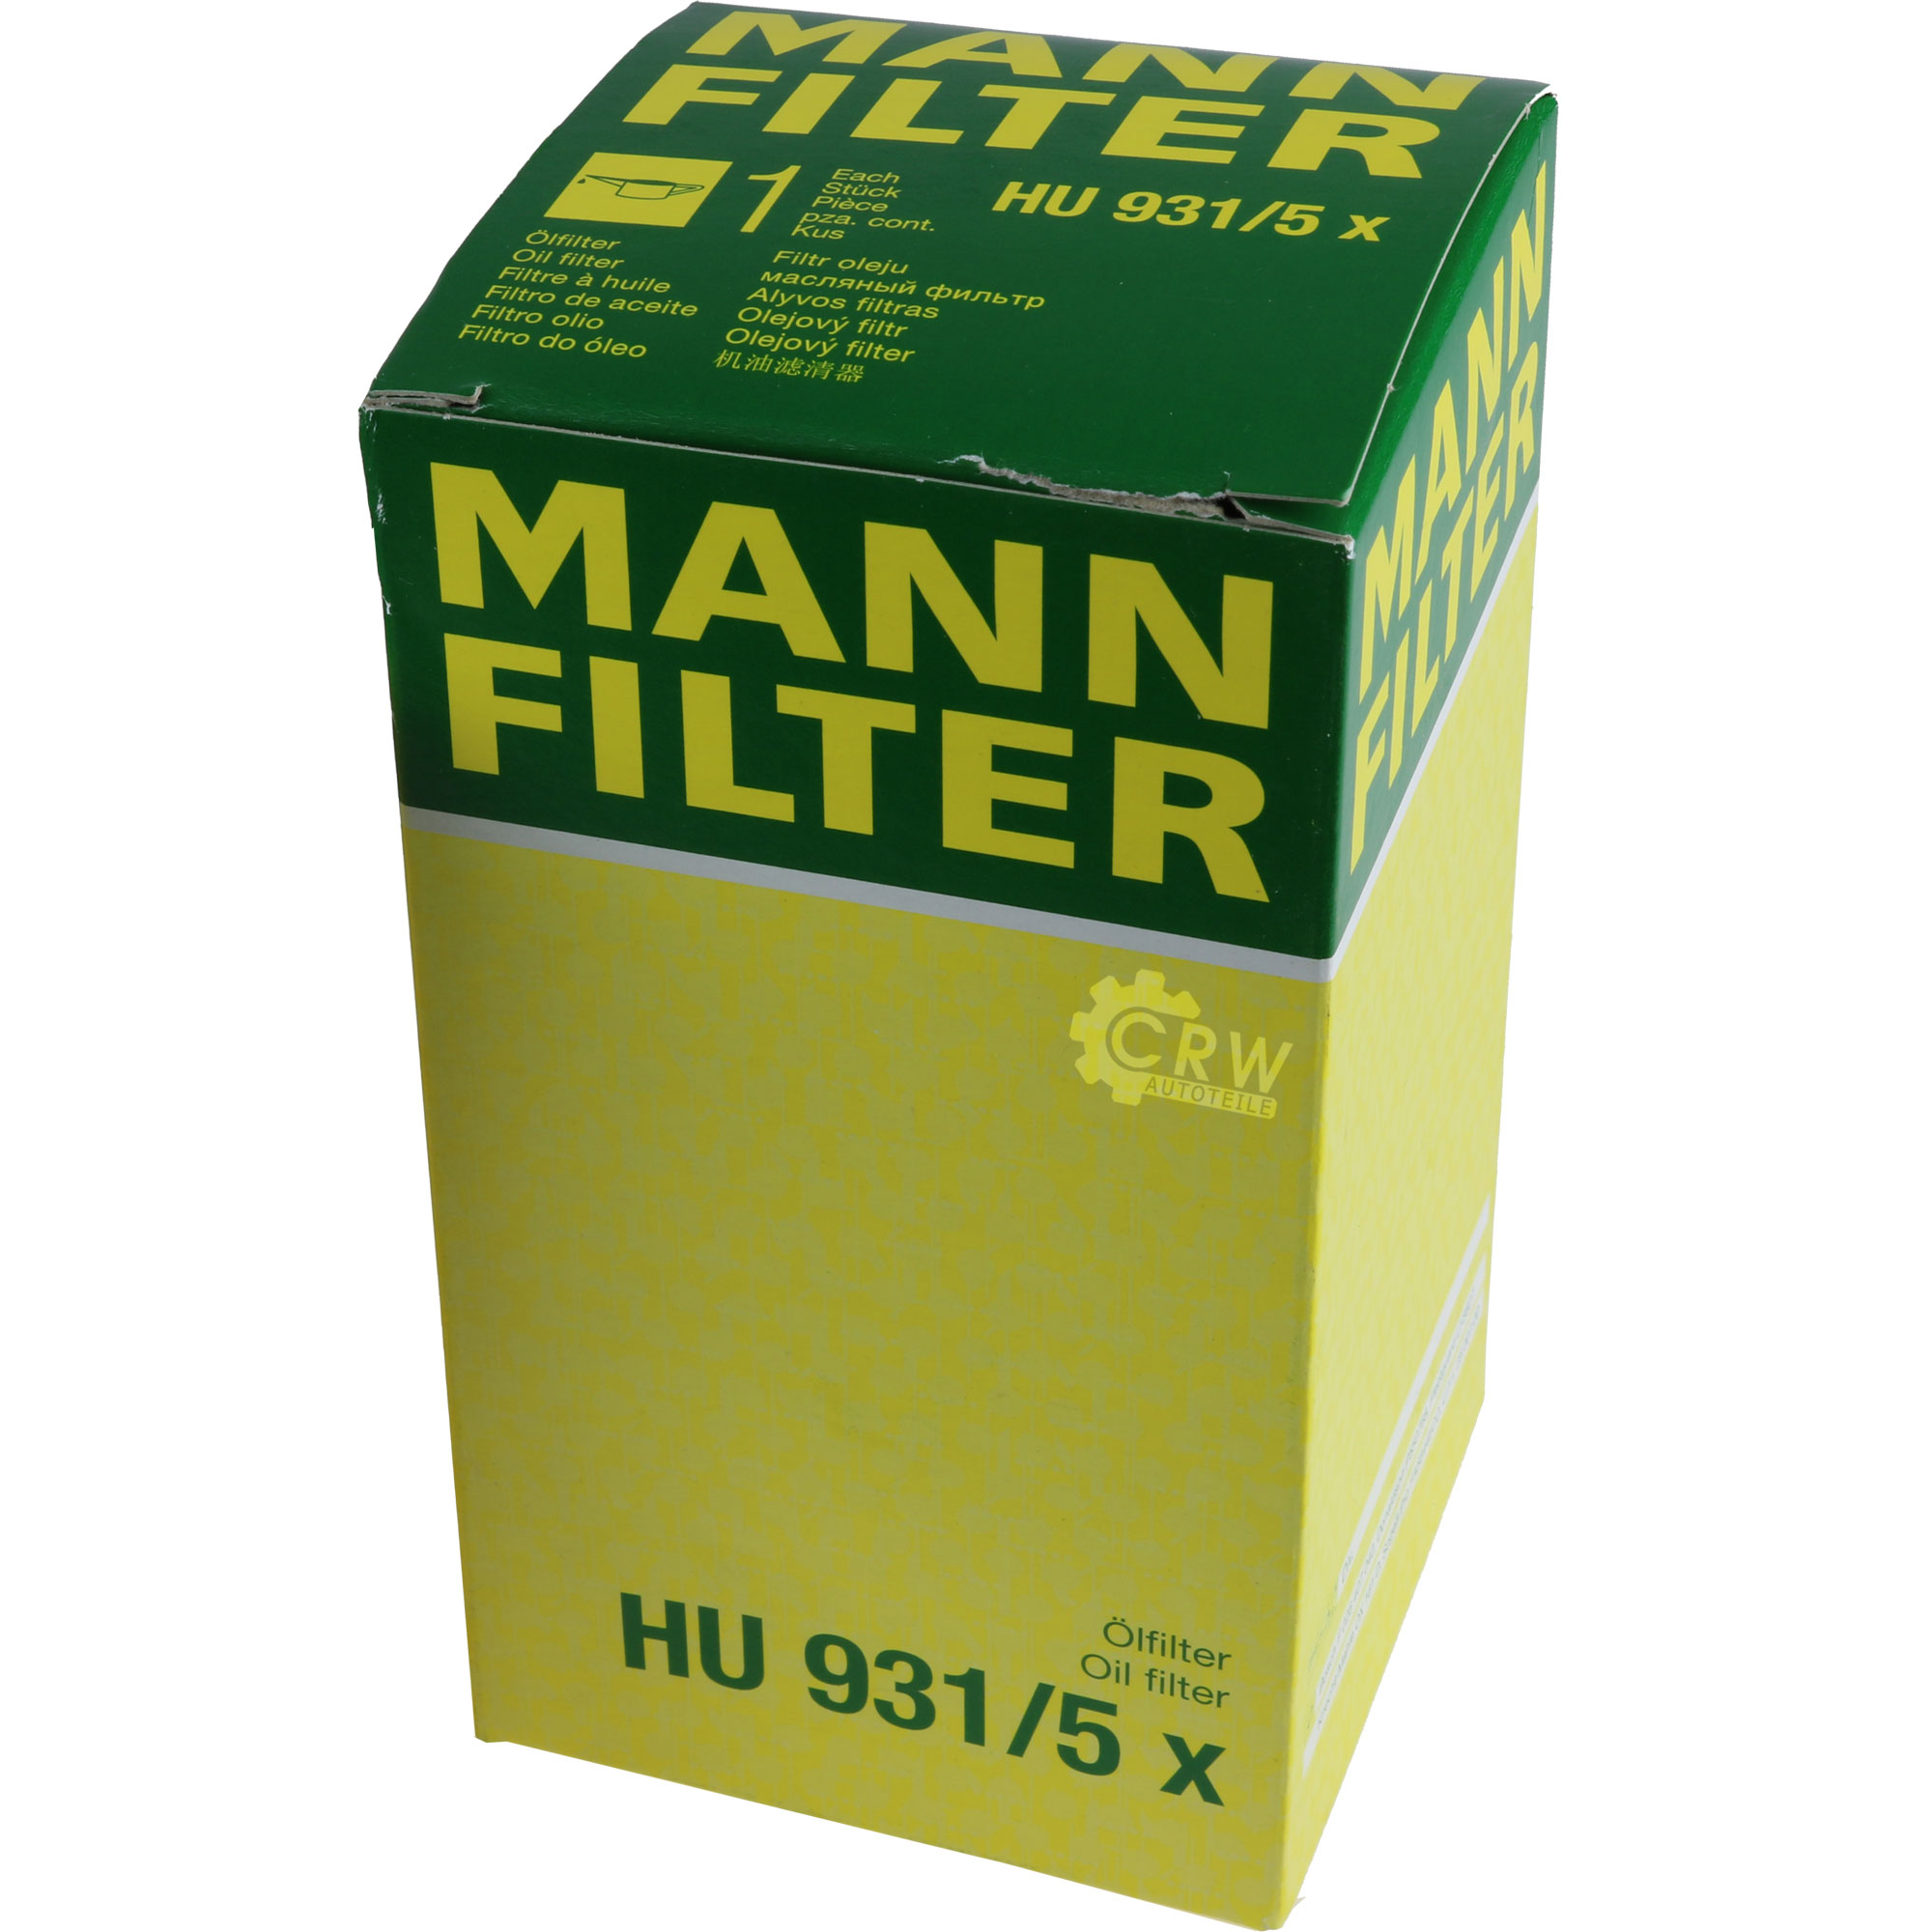 MANN-FILTER Ölfilter Oelfilter HU 931/5 x Oil Filter